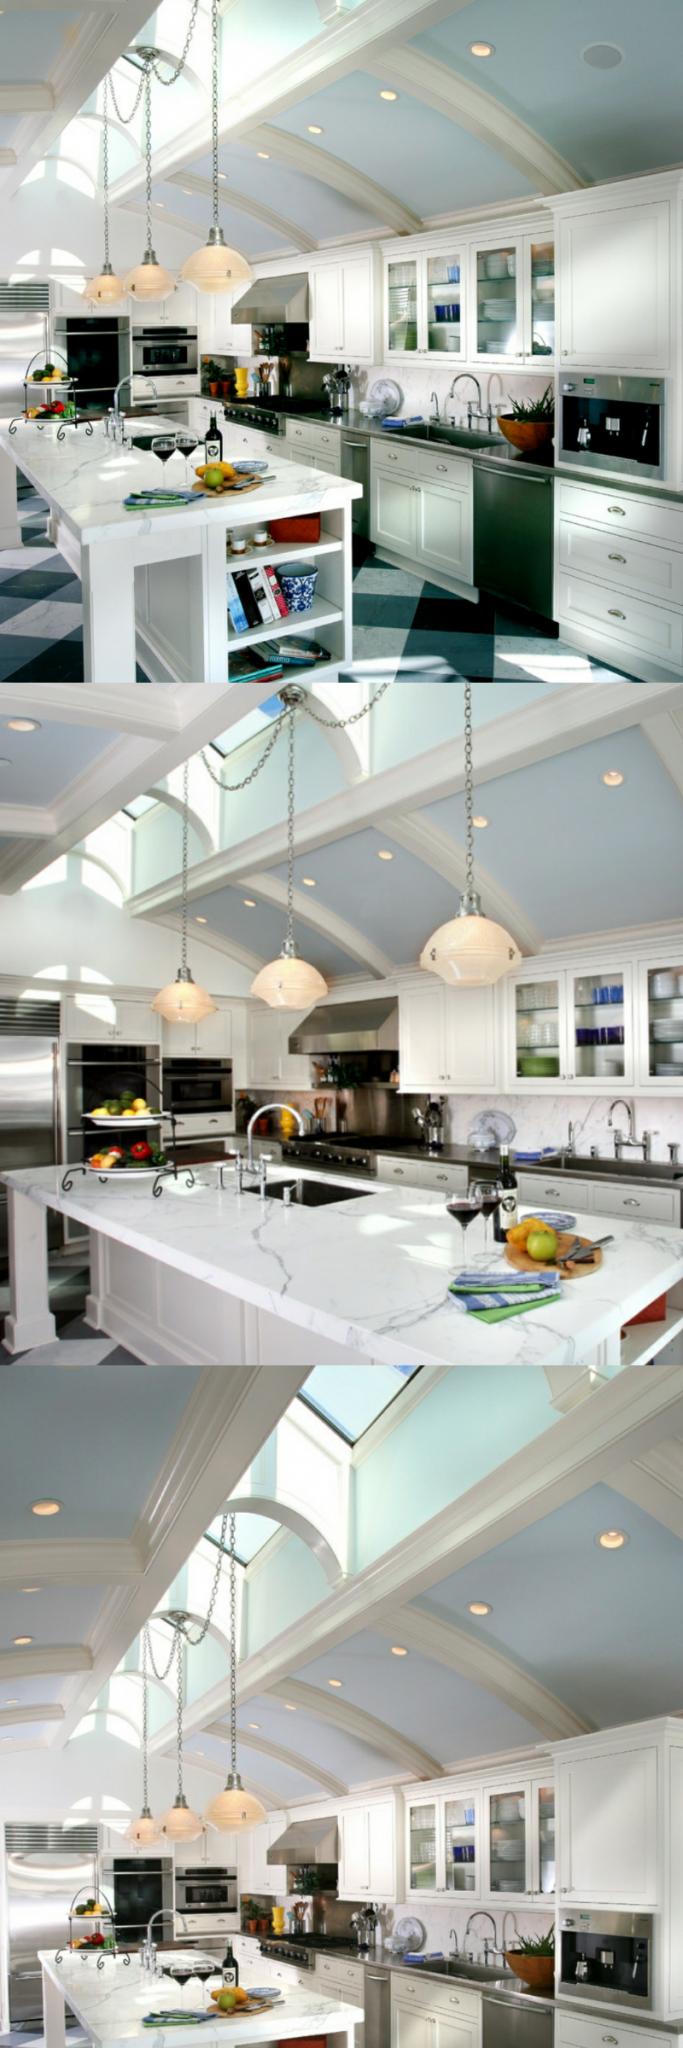 flush mount kitchen ceiling light